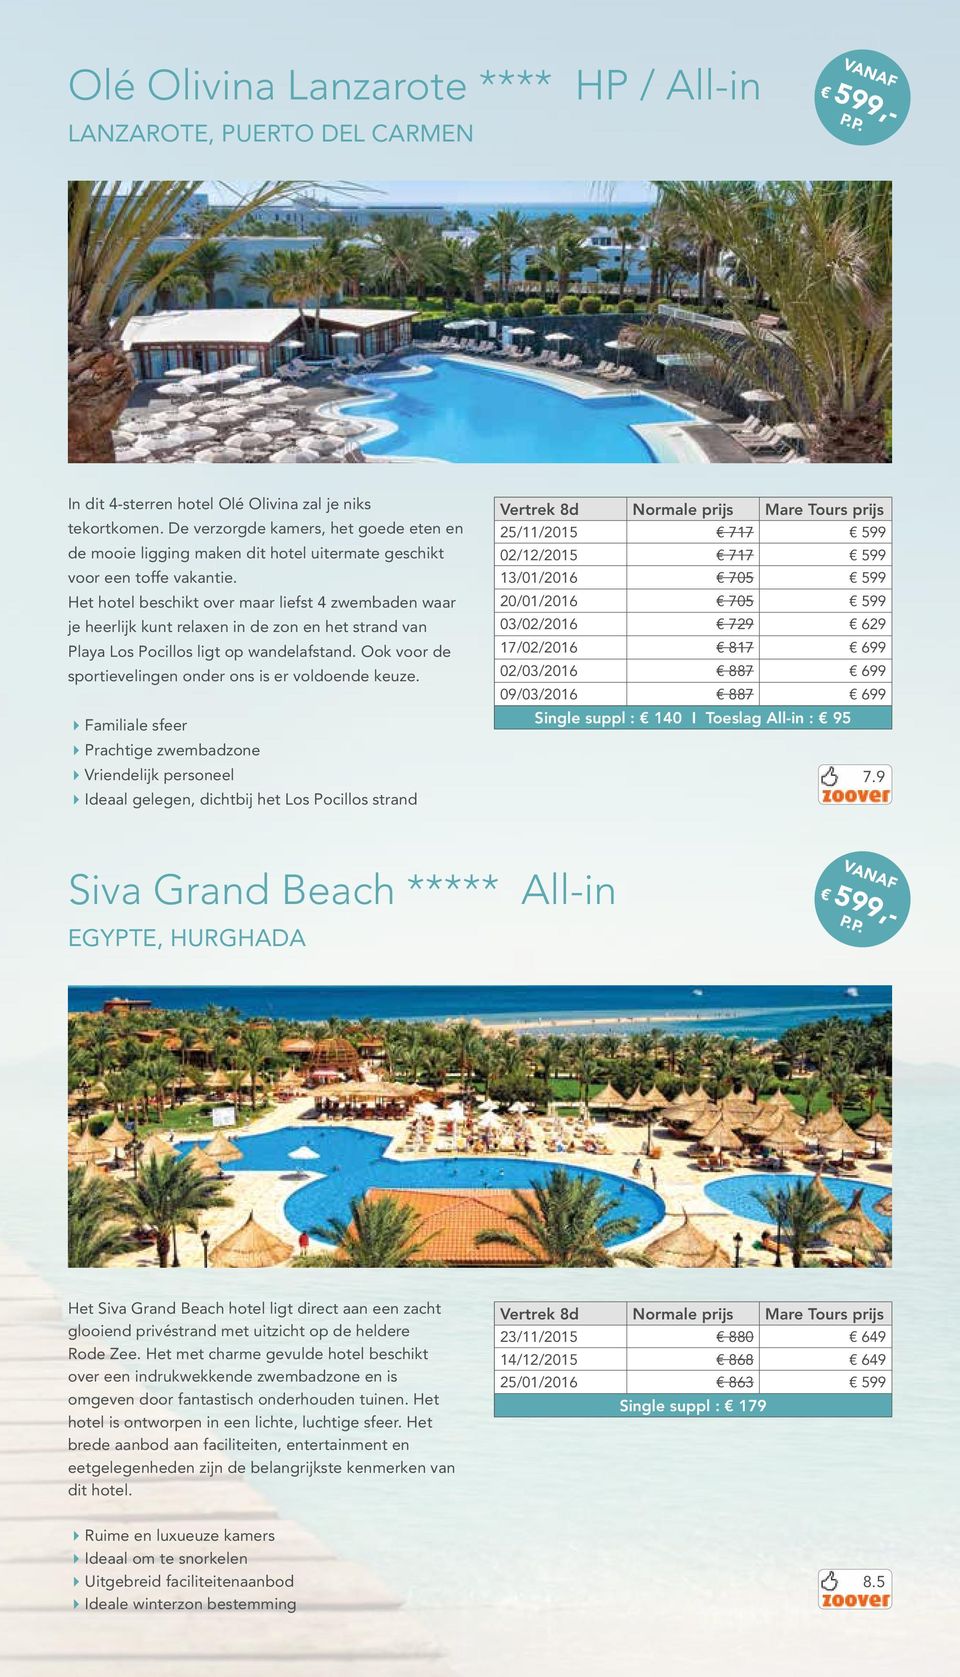 Het hotel beschikt over maar liefst 4 zwembaden waar je heerlijk kunt relaxen in de zon en het strand van Playa Los Pocillos ligt op wandelafstand.